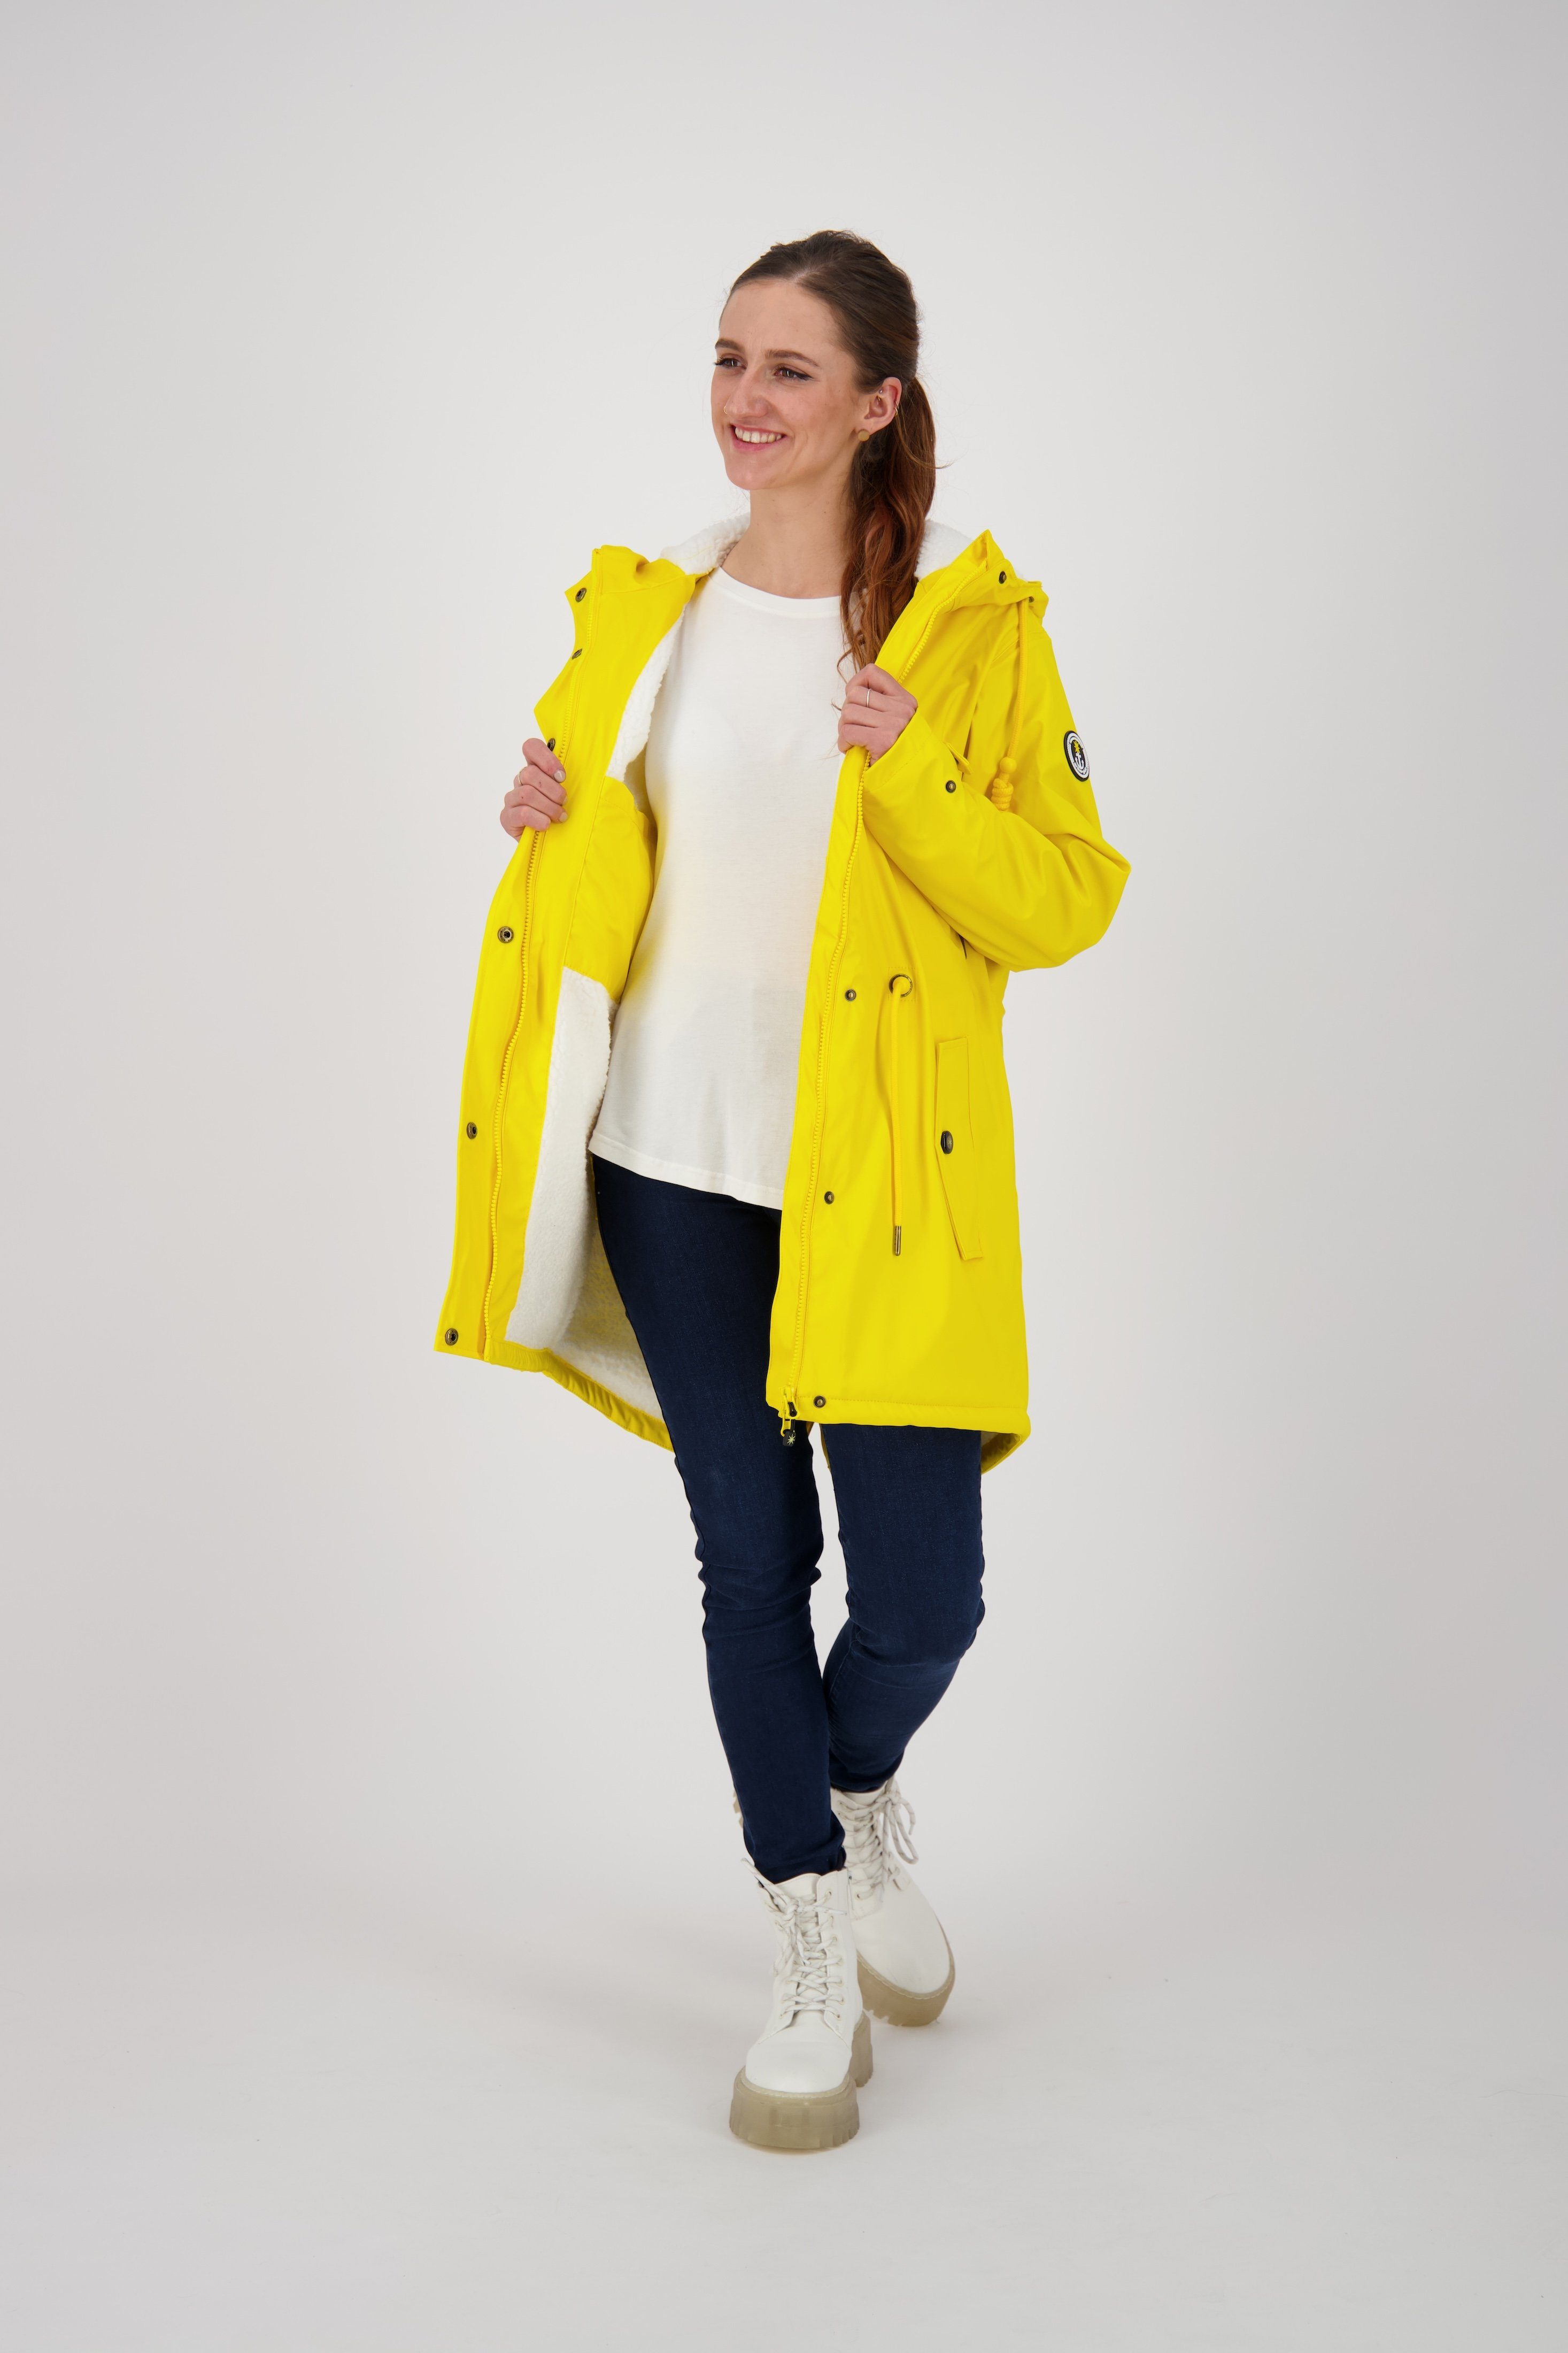 DEPROC Active Regenmantel gelb auch WOMEN Friesennerz NEW in HALIFAX Größen erhältlich Großen